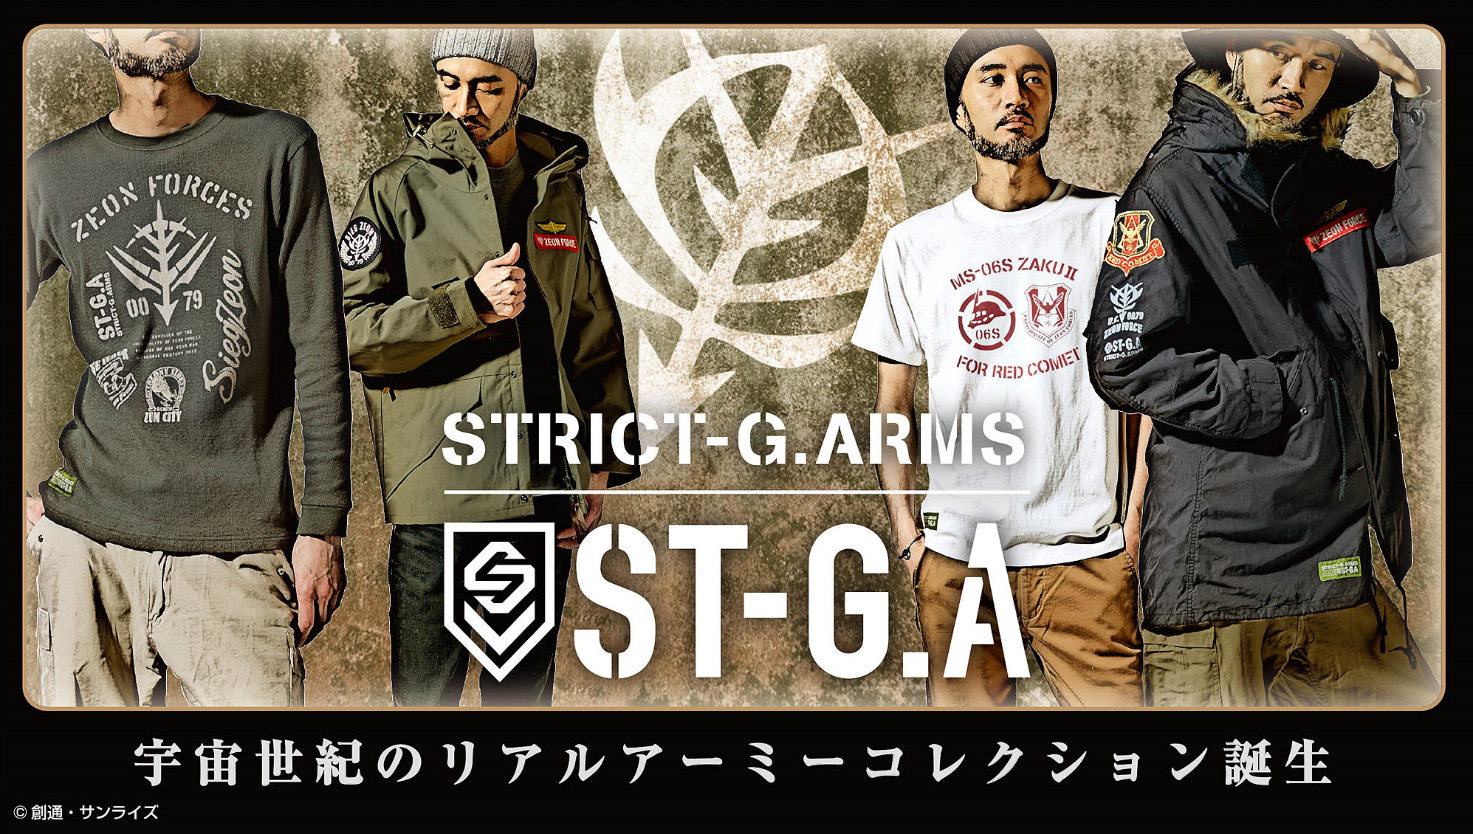 日本最激安 STRICT-G.ARMS『機動戦士ガンダム』M-65 ライナー付き